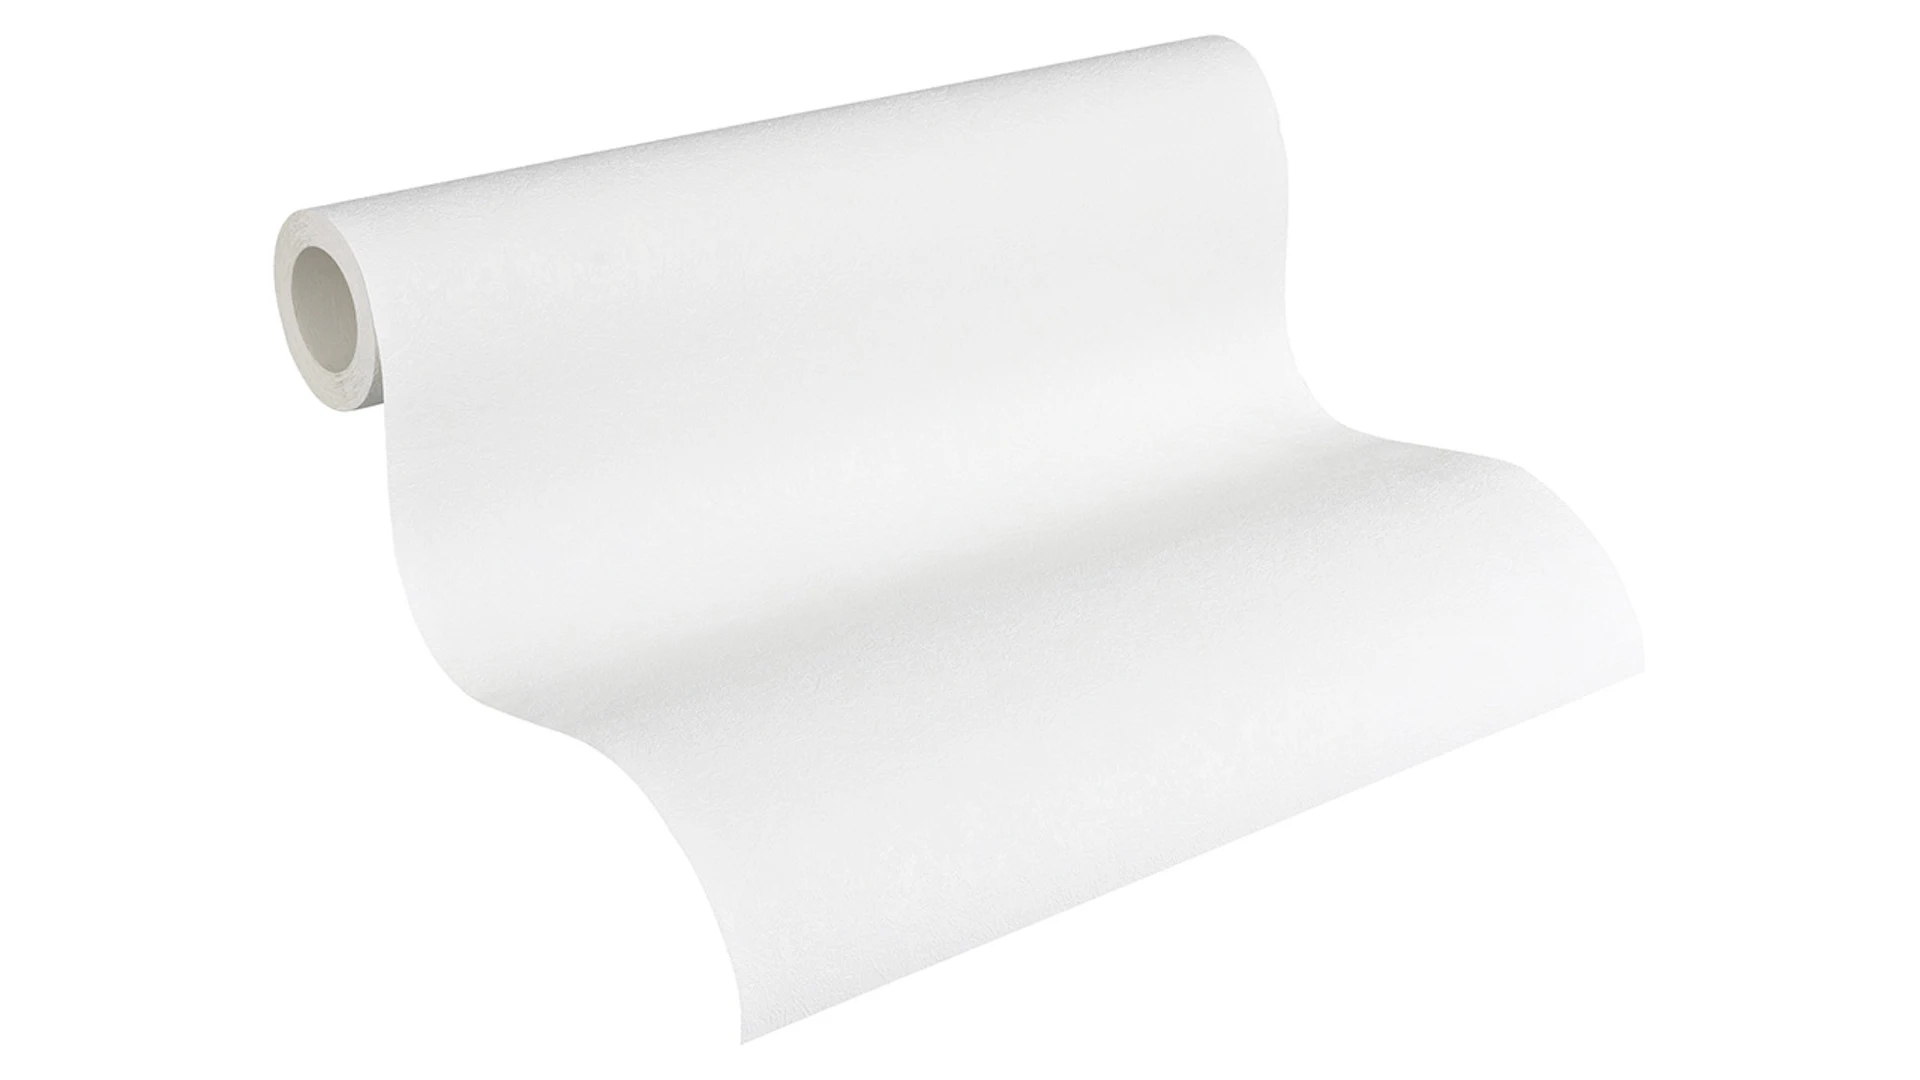 papier peint vinyle blanc vintage plains masterbatch 2020 718